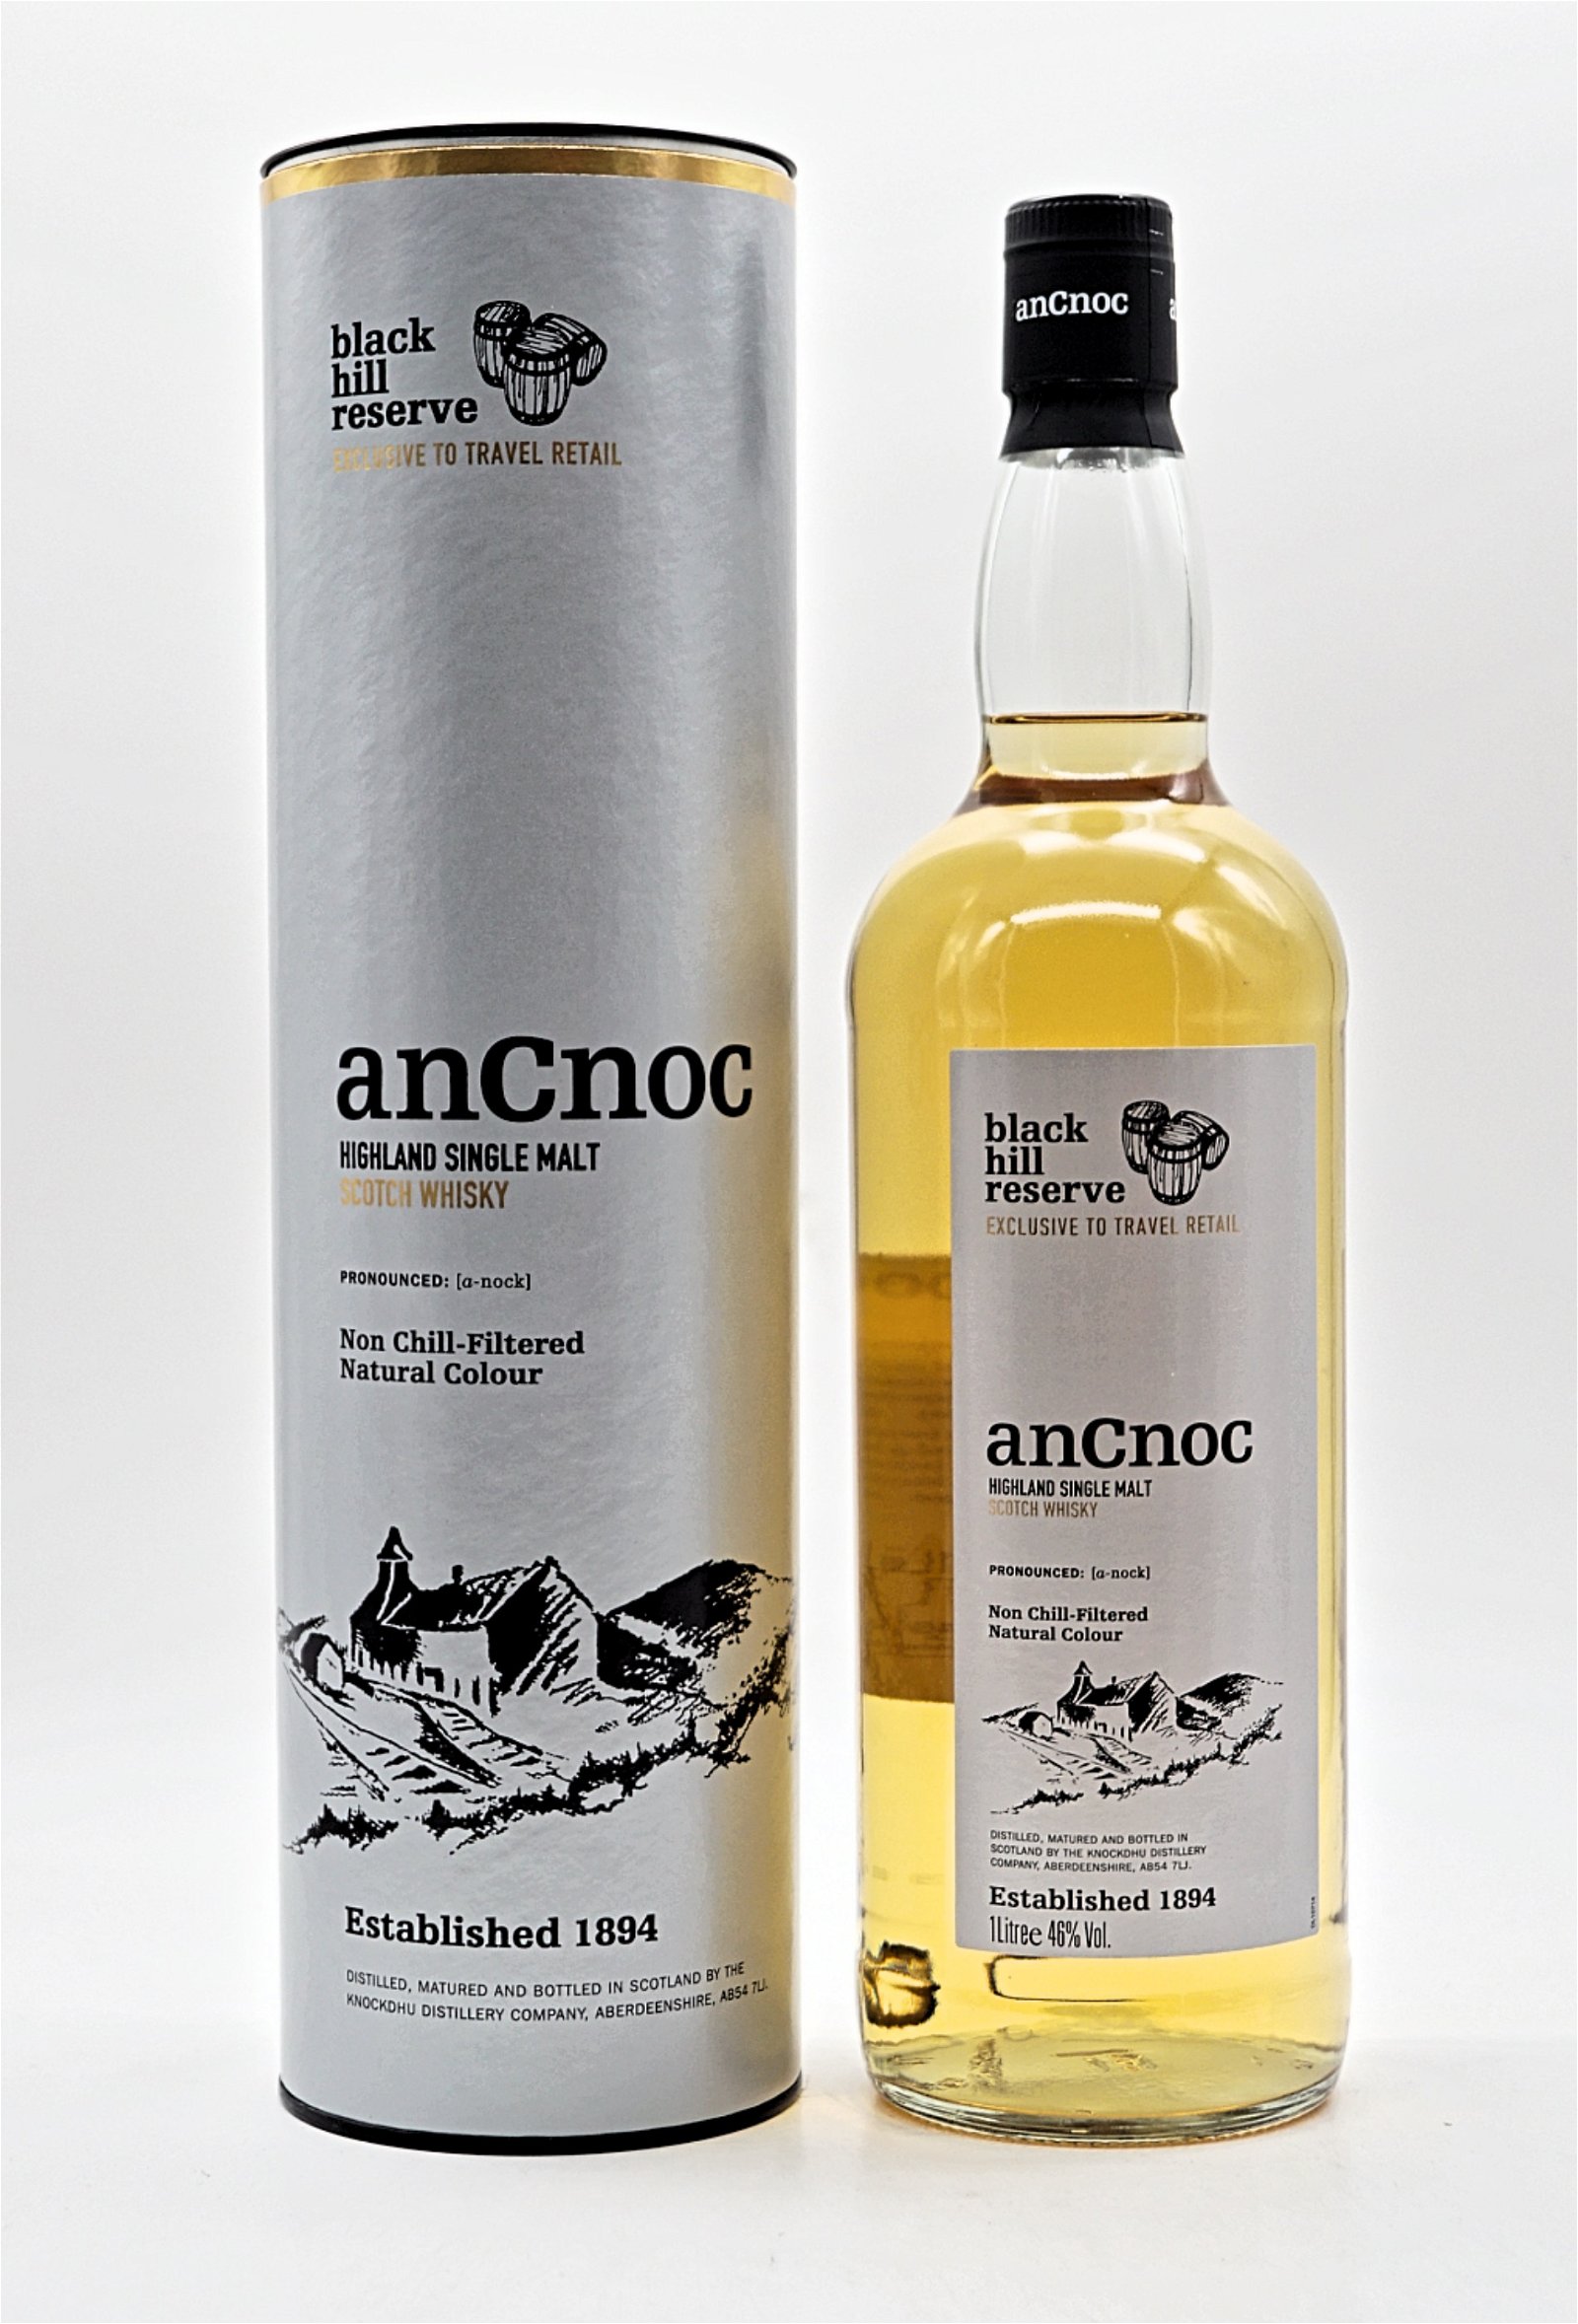 anCnoc Black Hill Reserve Highland Single Malt Scotch Whisky